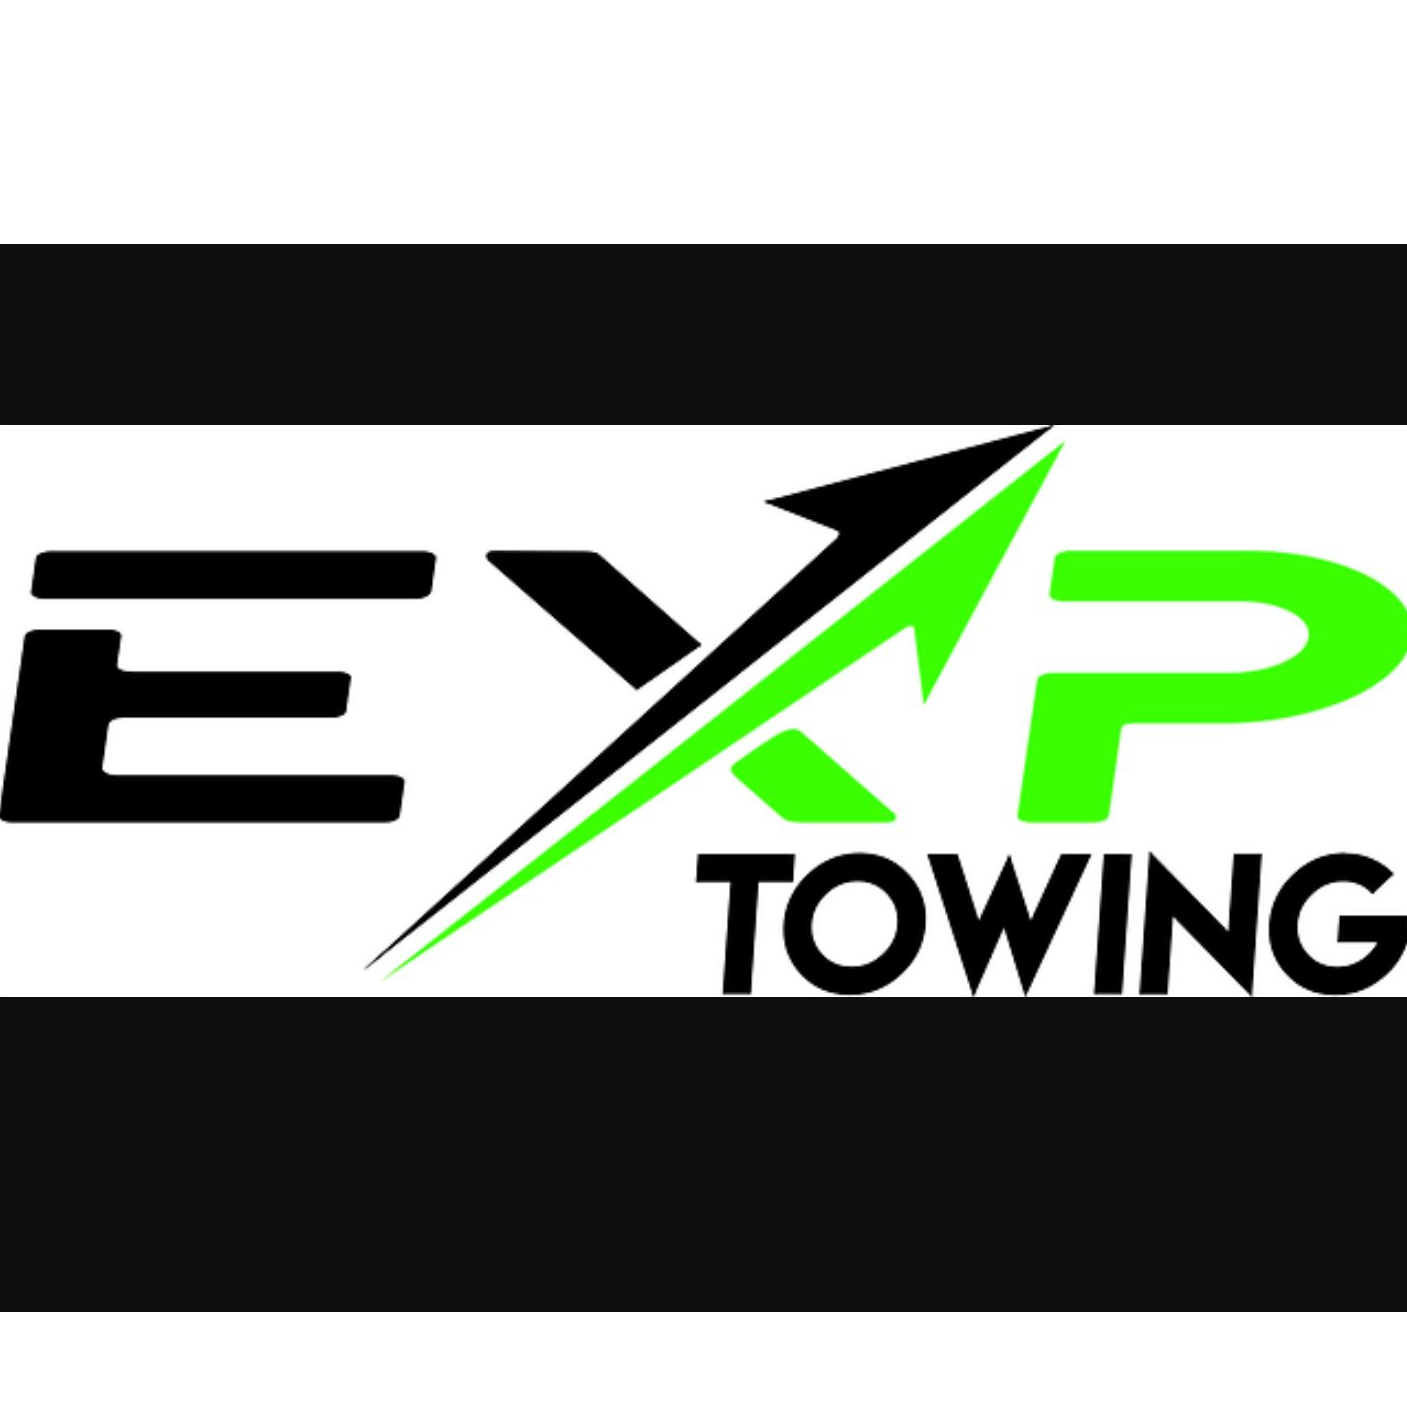 EXP Towing logo